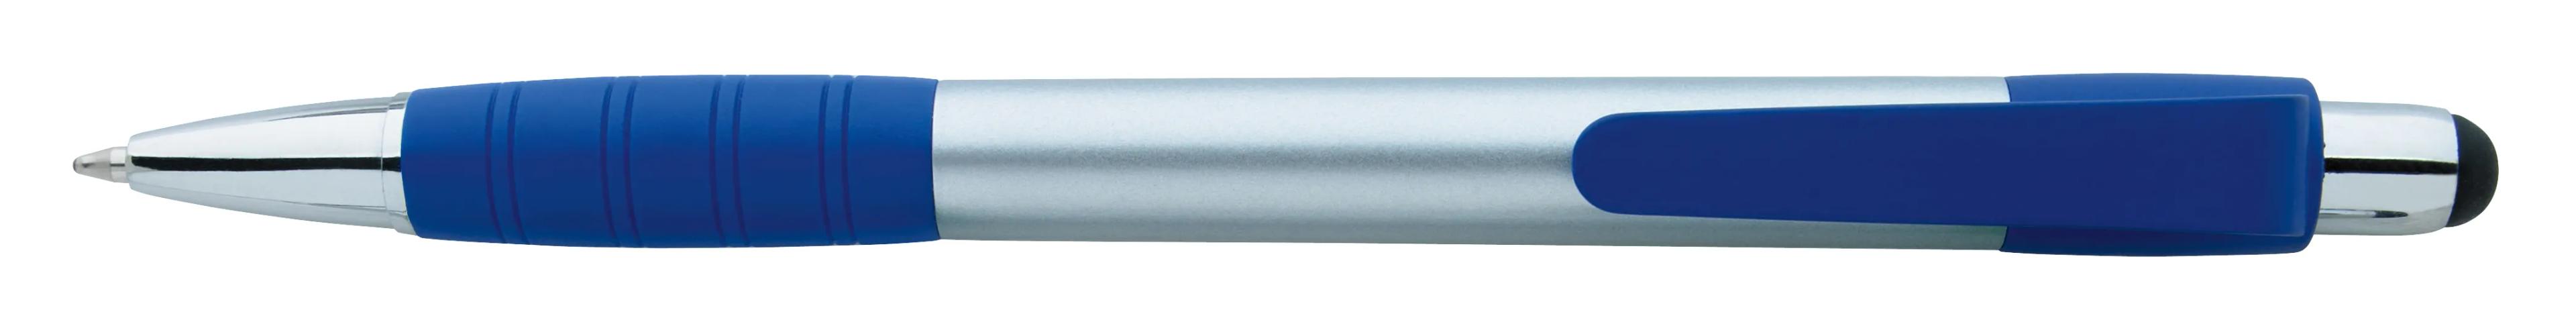 Silver Element Stylus Pen 5 of 53